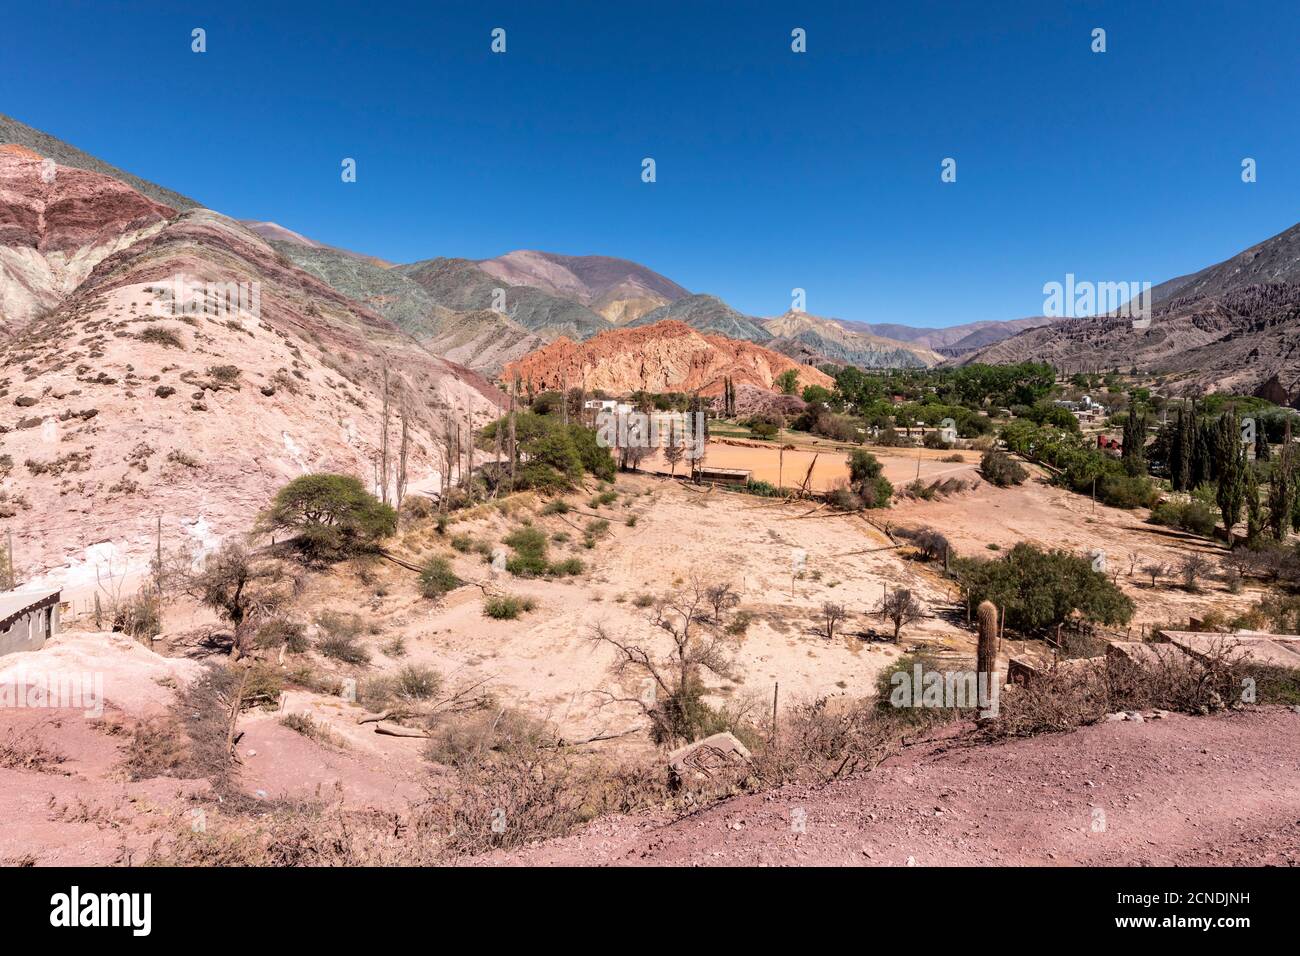 El pueblo de Purmamarca, en la base de la Colina de los siete colores, provincia de Jujuy, al noroeste de Argentina Foto de stock